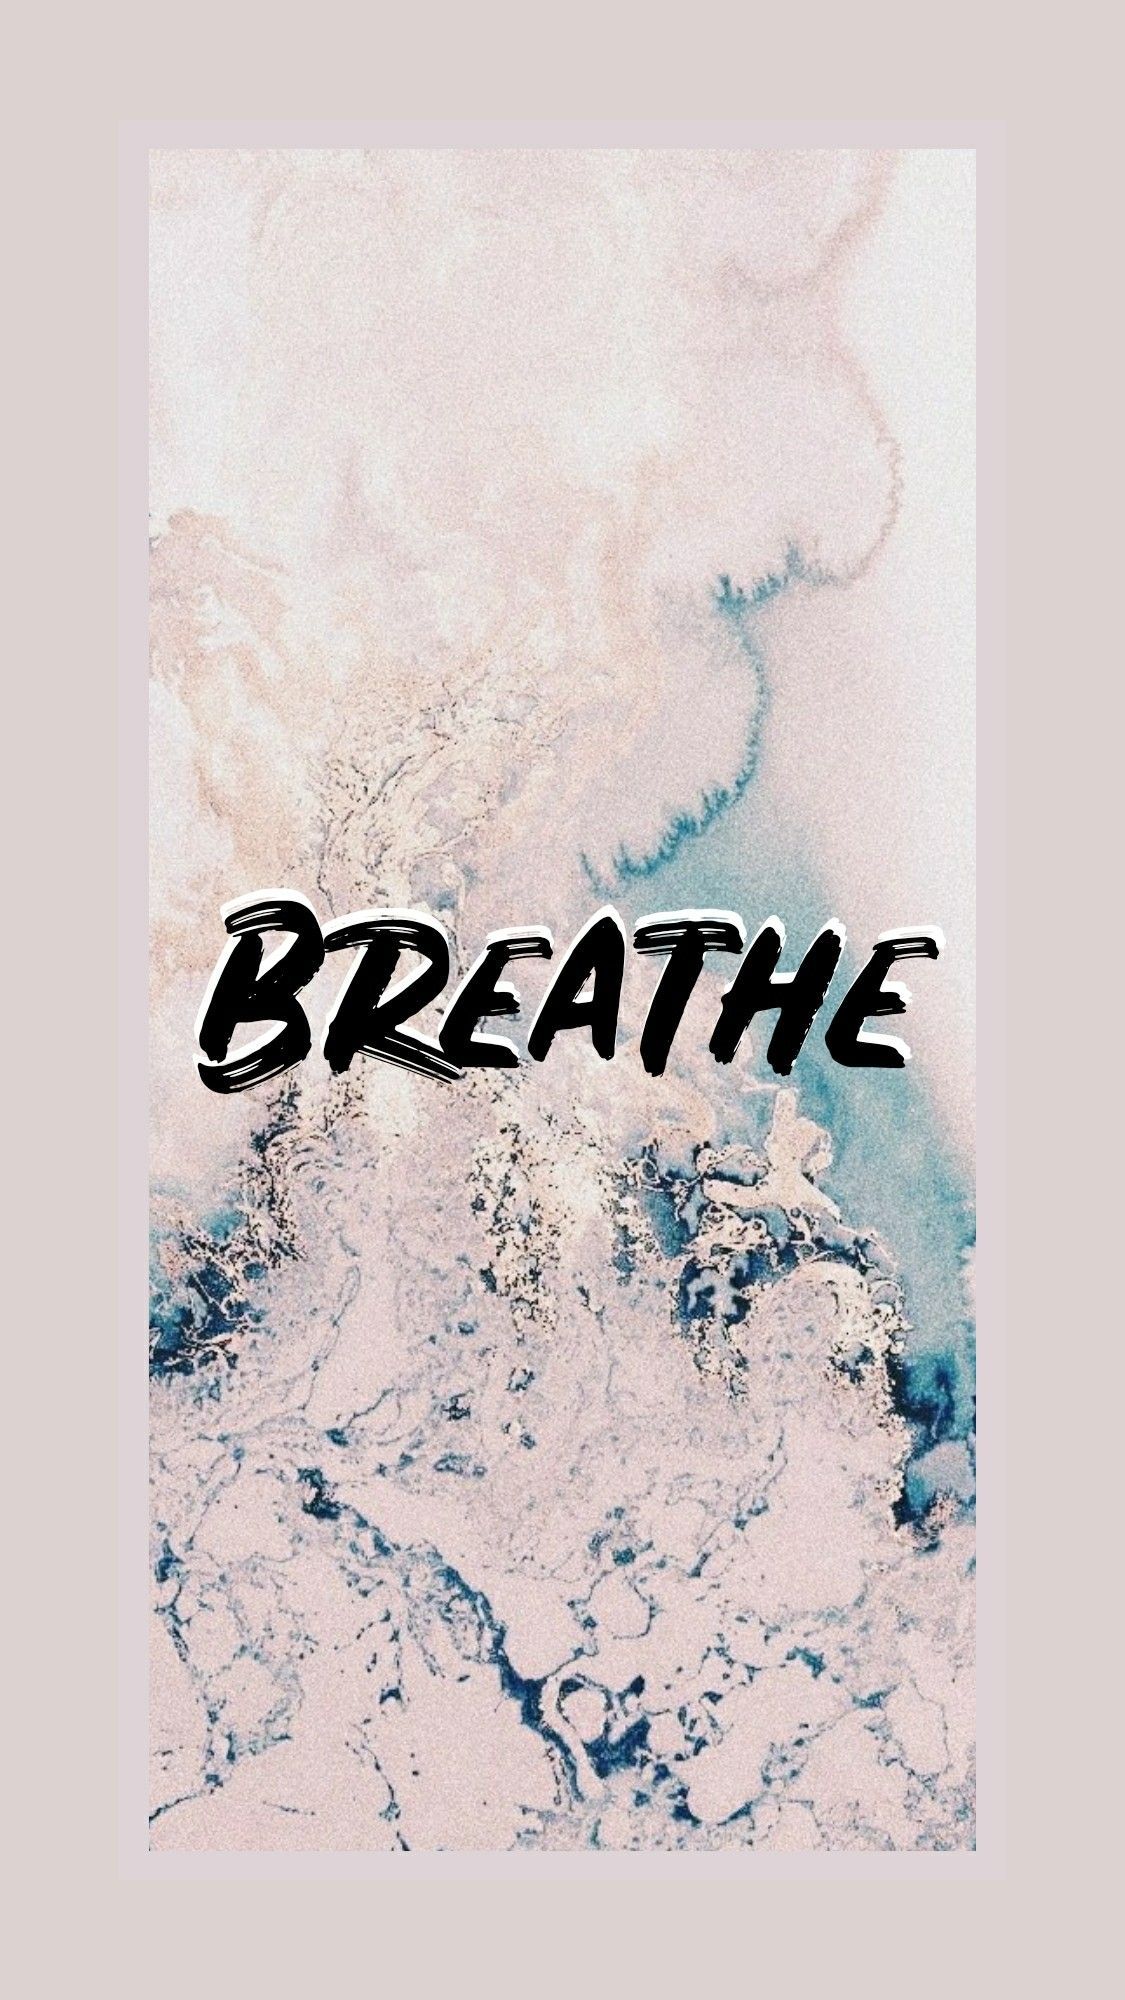 Breathe, aesthetic wallpaper. Aesthetic wallpaper, Wallpaper, Breathe